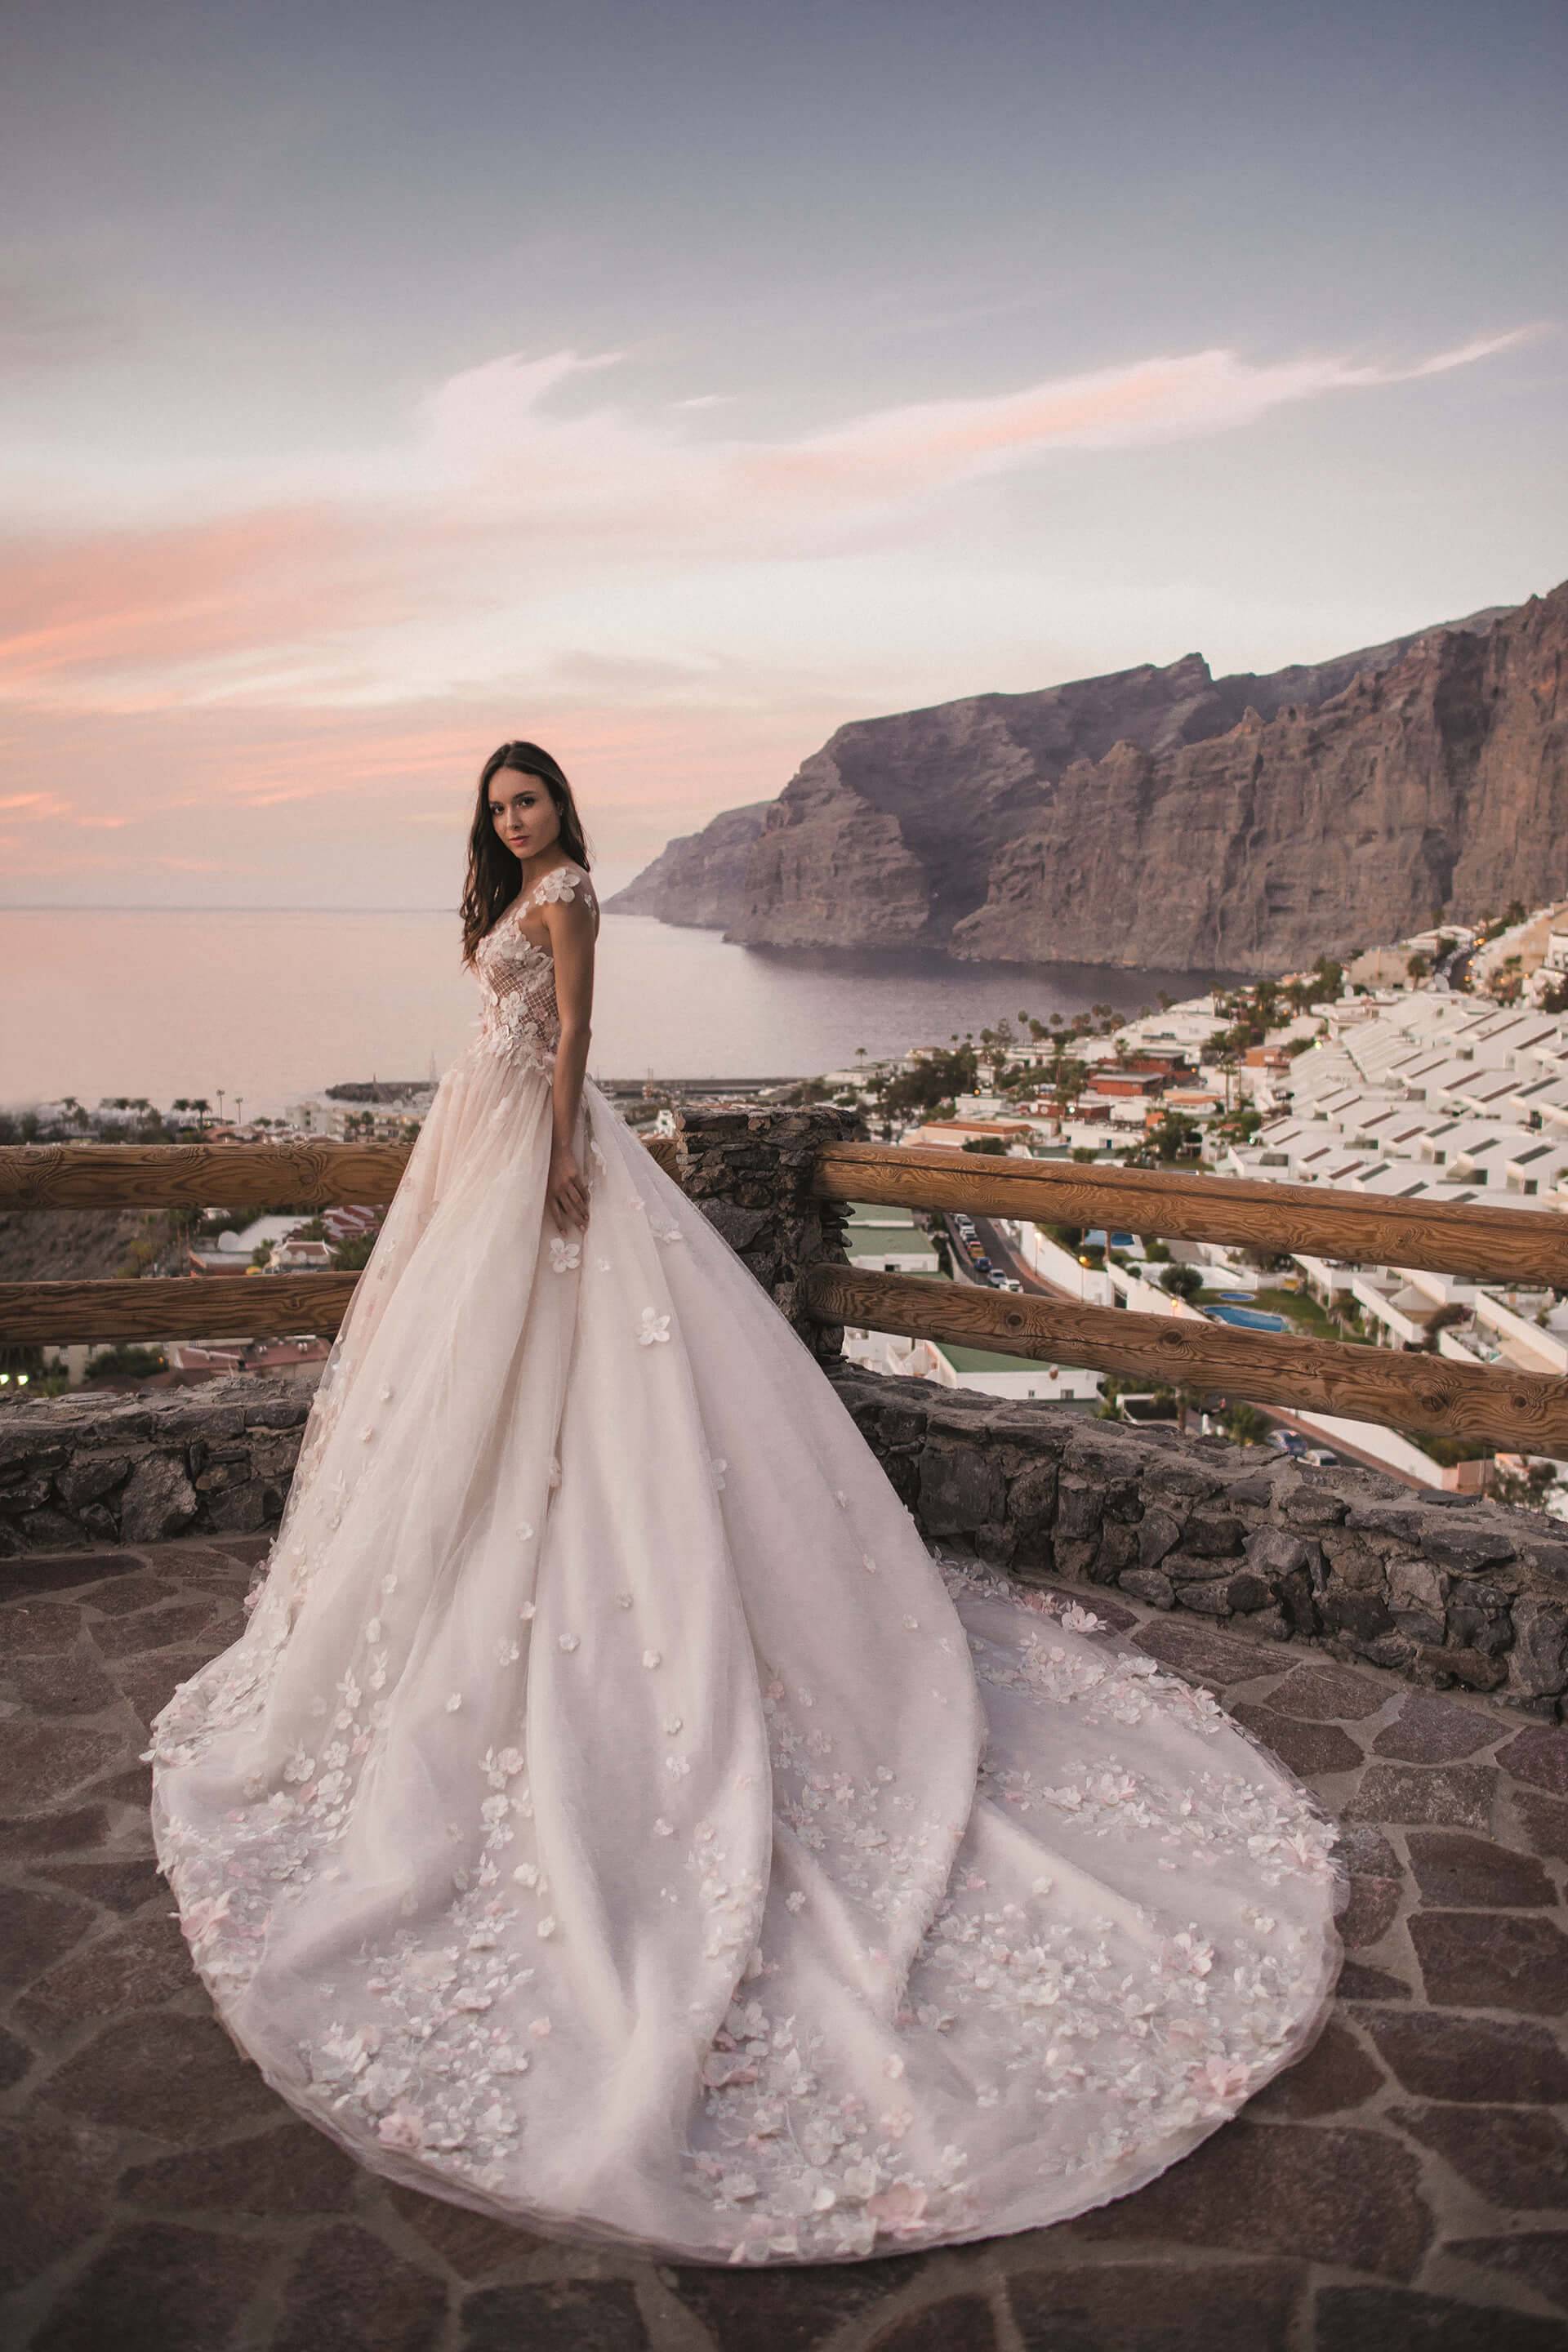 Как выбрать свадебное платье, красивые фасоны и модели 2019 года